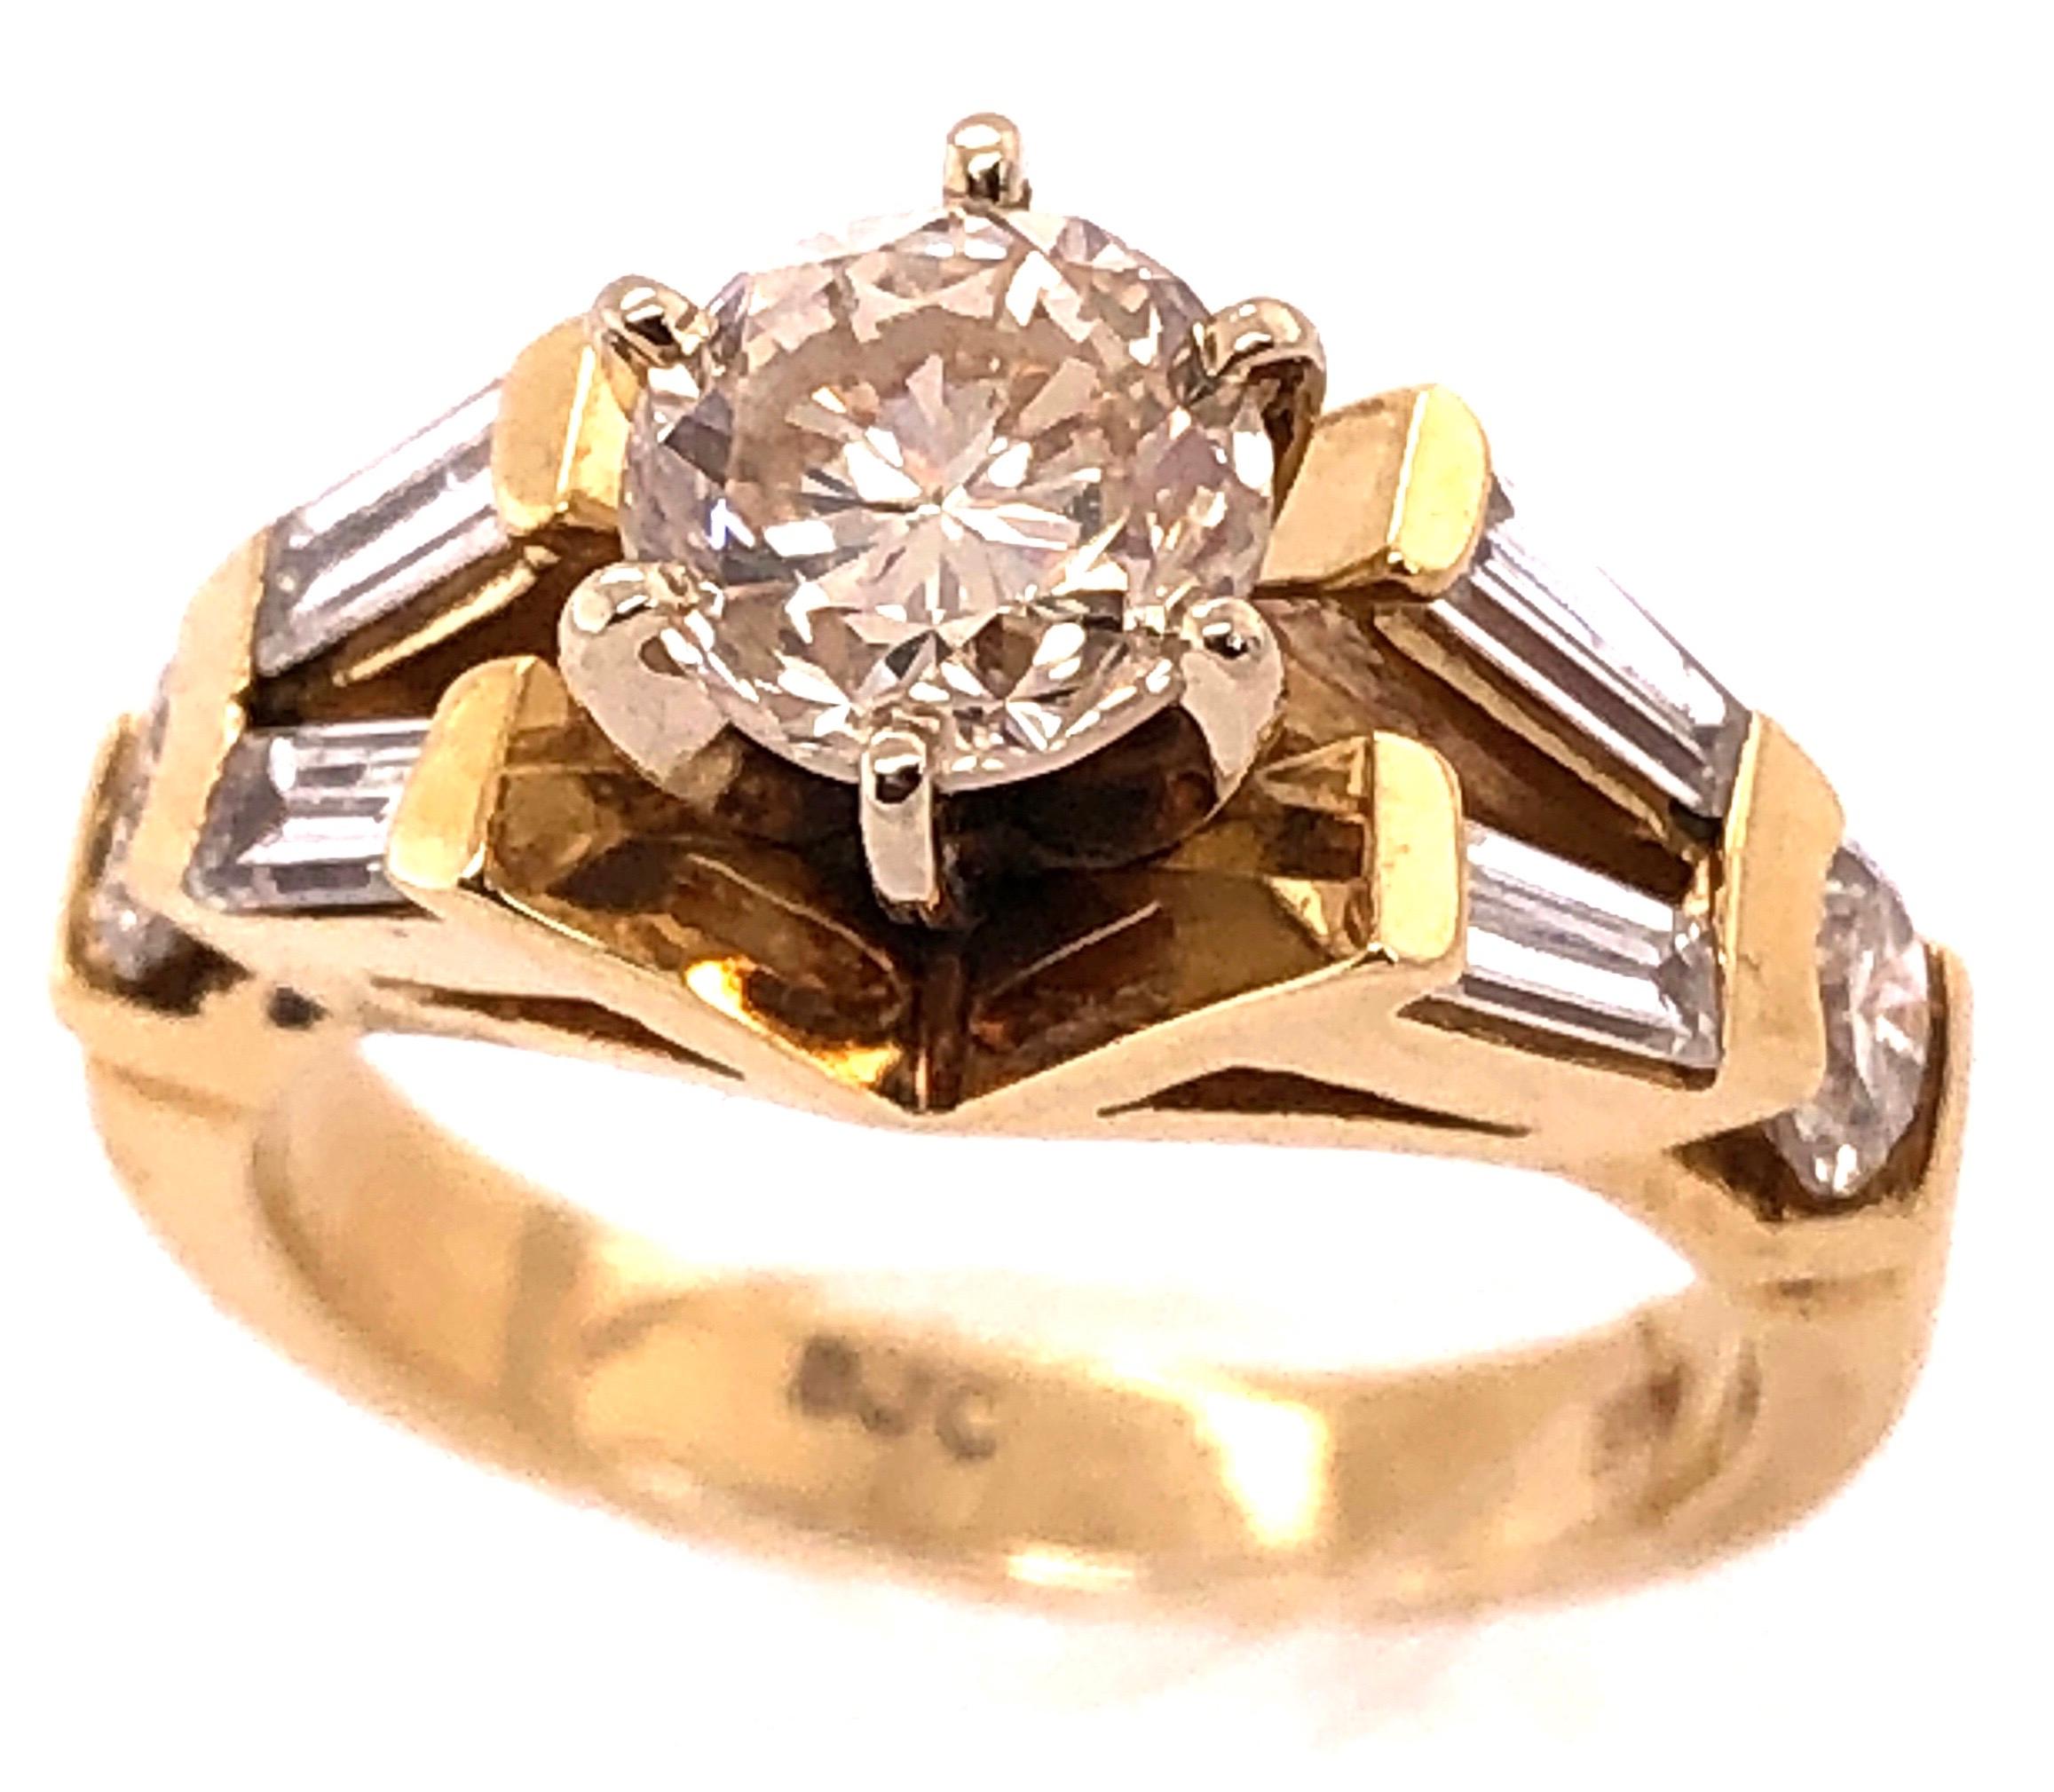 Bague de fiançailles en or jaune 14 carats Poids total des diamants : 1,50.
Taille 5.5
Poids total : 6,29 grammes.
Pierre centrale environ .90